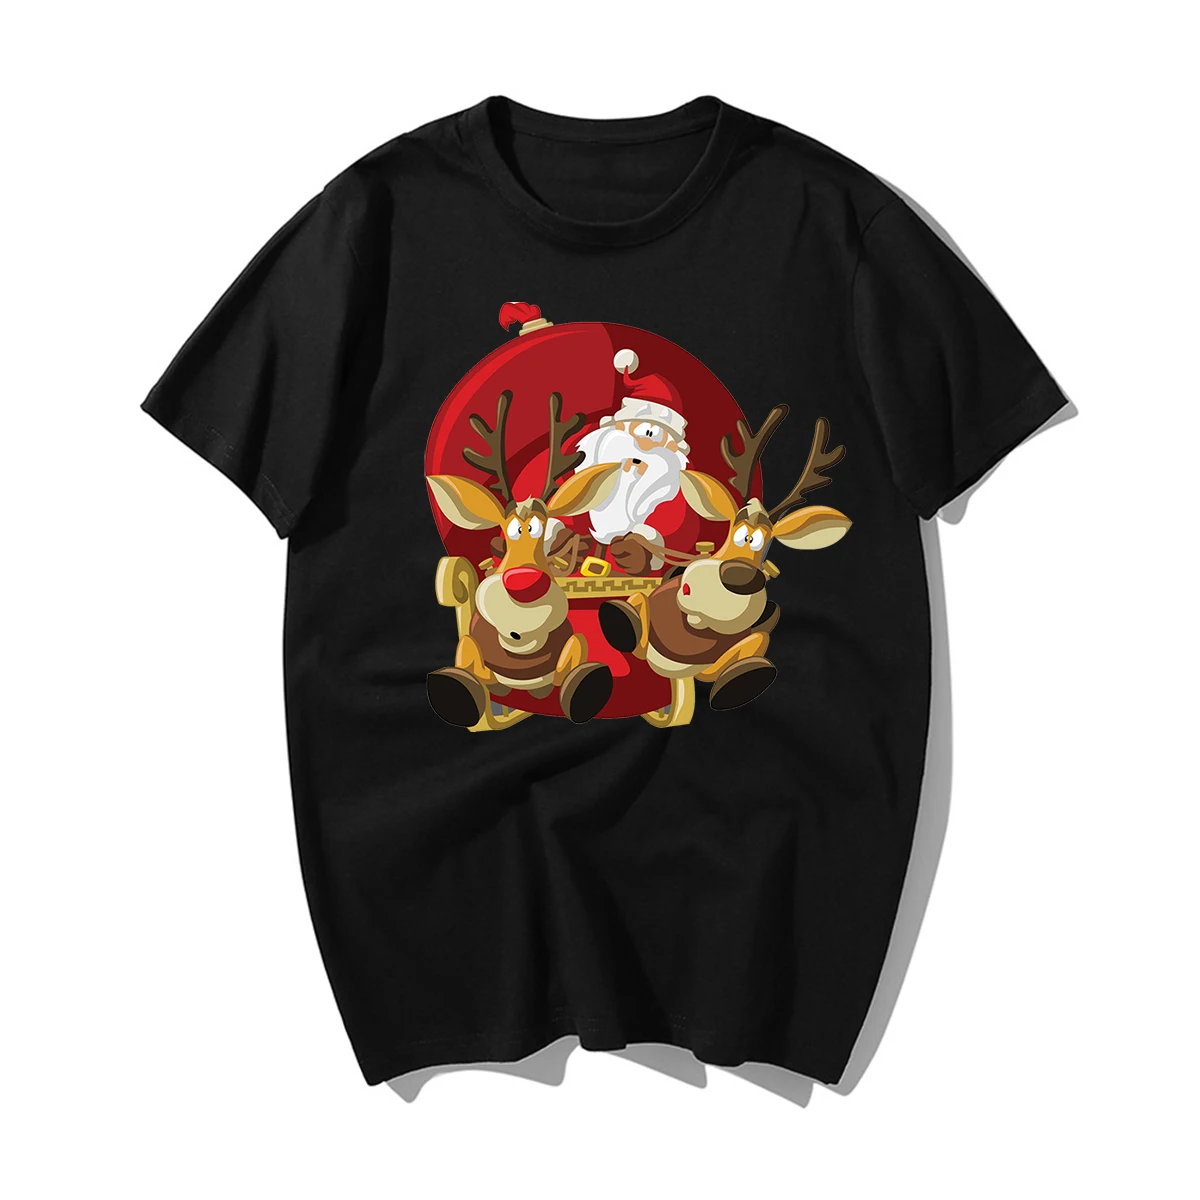 Забавные новогодние футболки с изображением Санта Клауса и оленя, мужские футболки с рождеством, мужские повседневные футболки из хлопка, подарок на Рождество для влюбленных